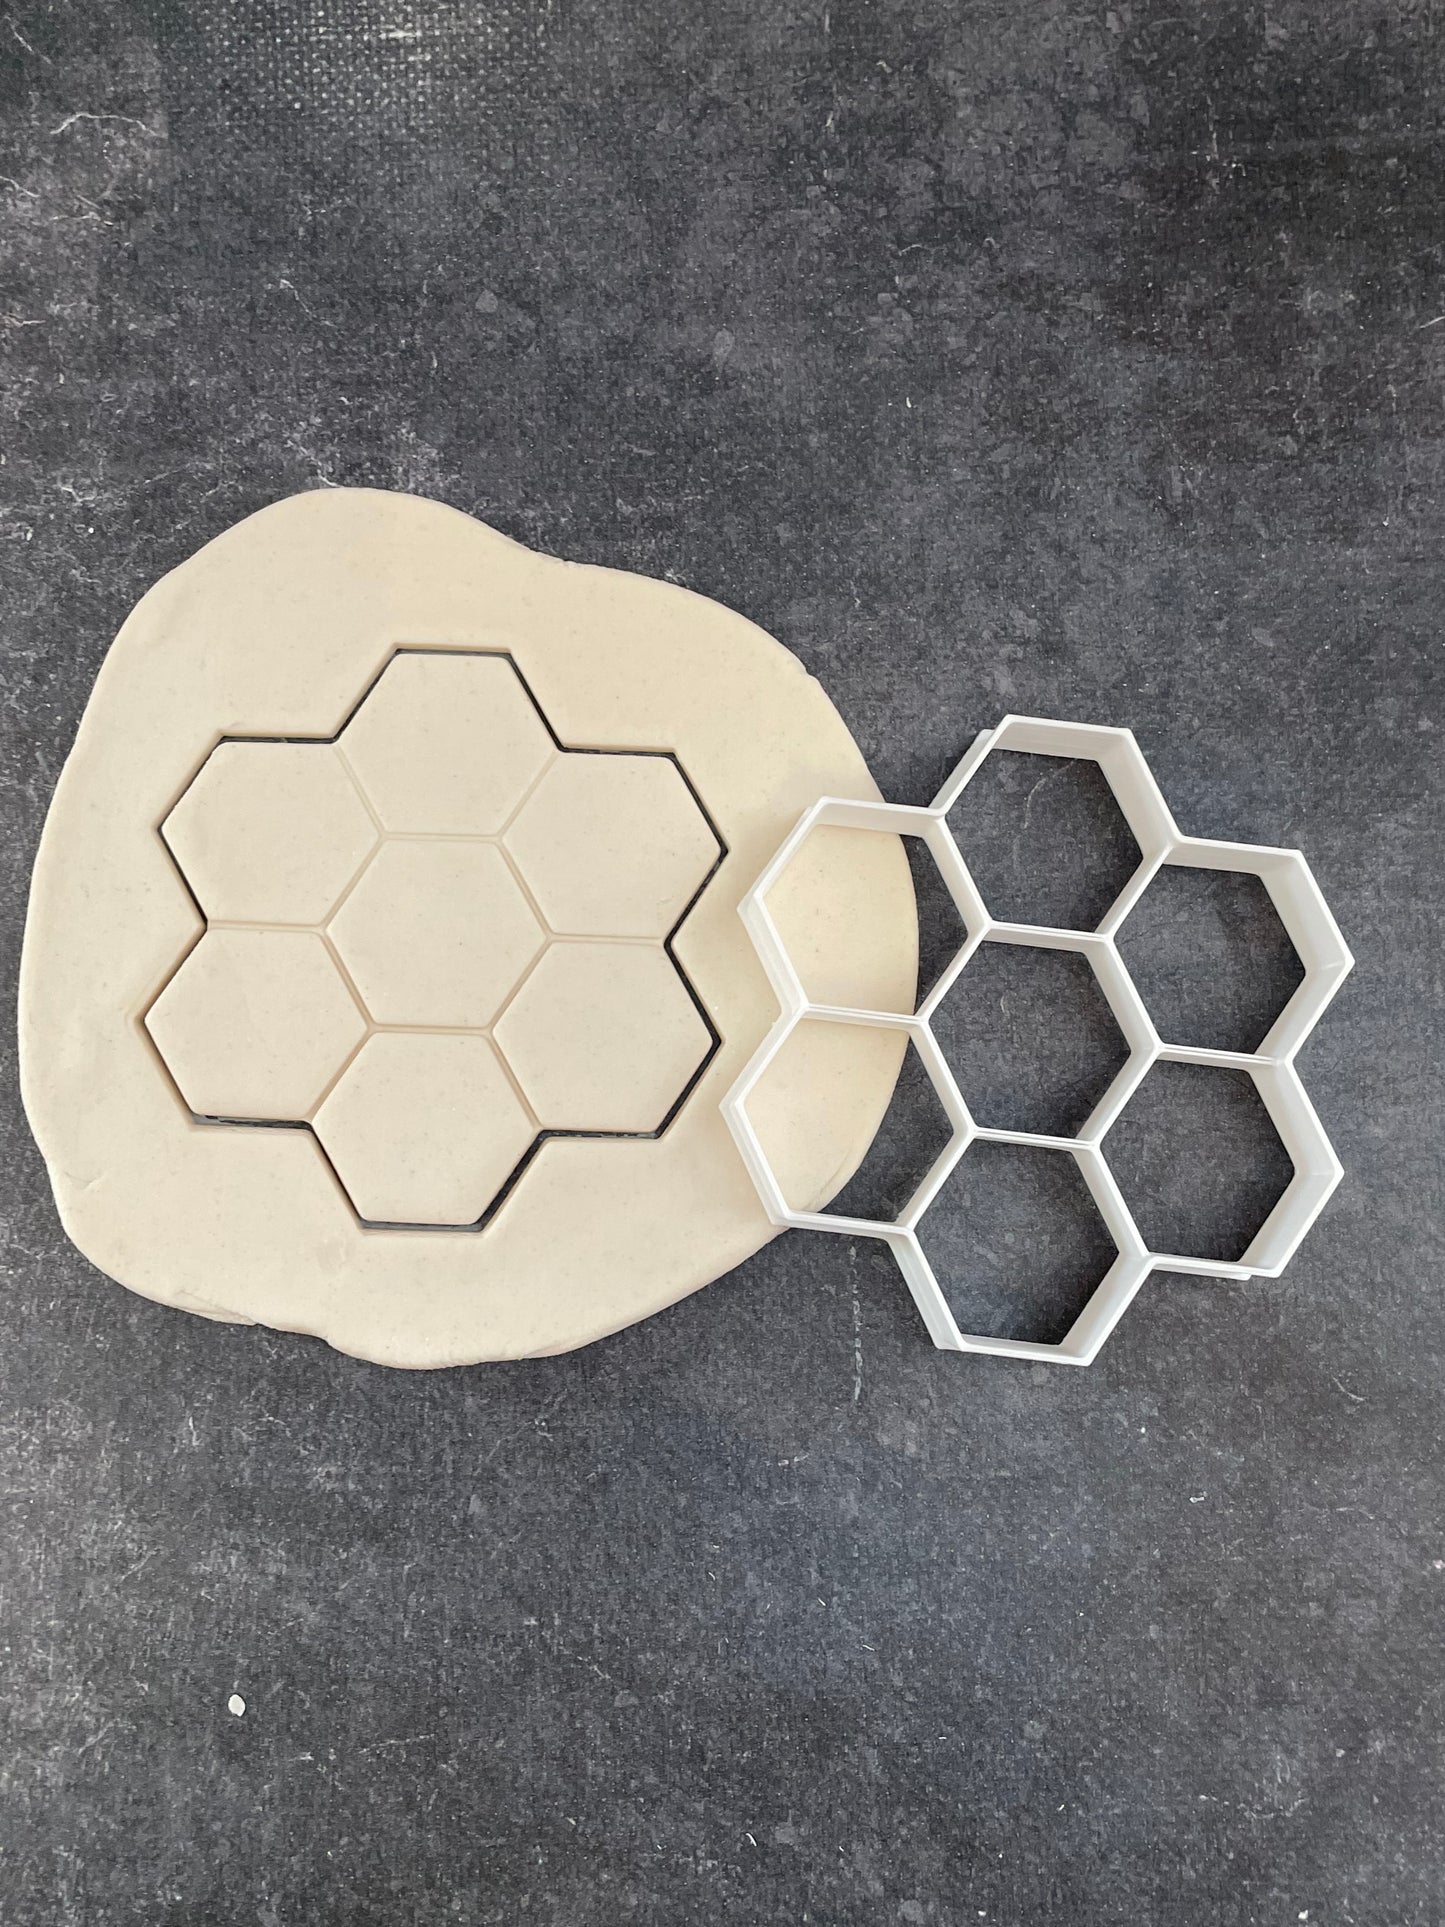 Emporte pièce motif ruche abeille - Forme - pour la réalisaton de biscuit sablé, patisserie, pate à sucre -Décoration gateau-Fait maison- ELACE